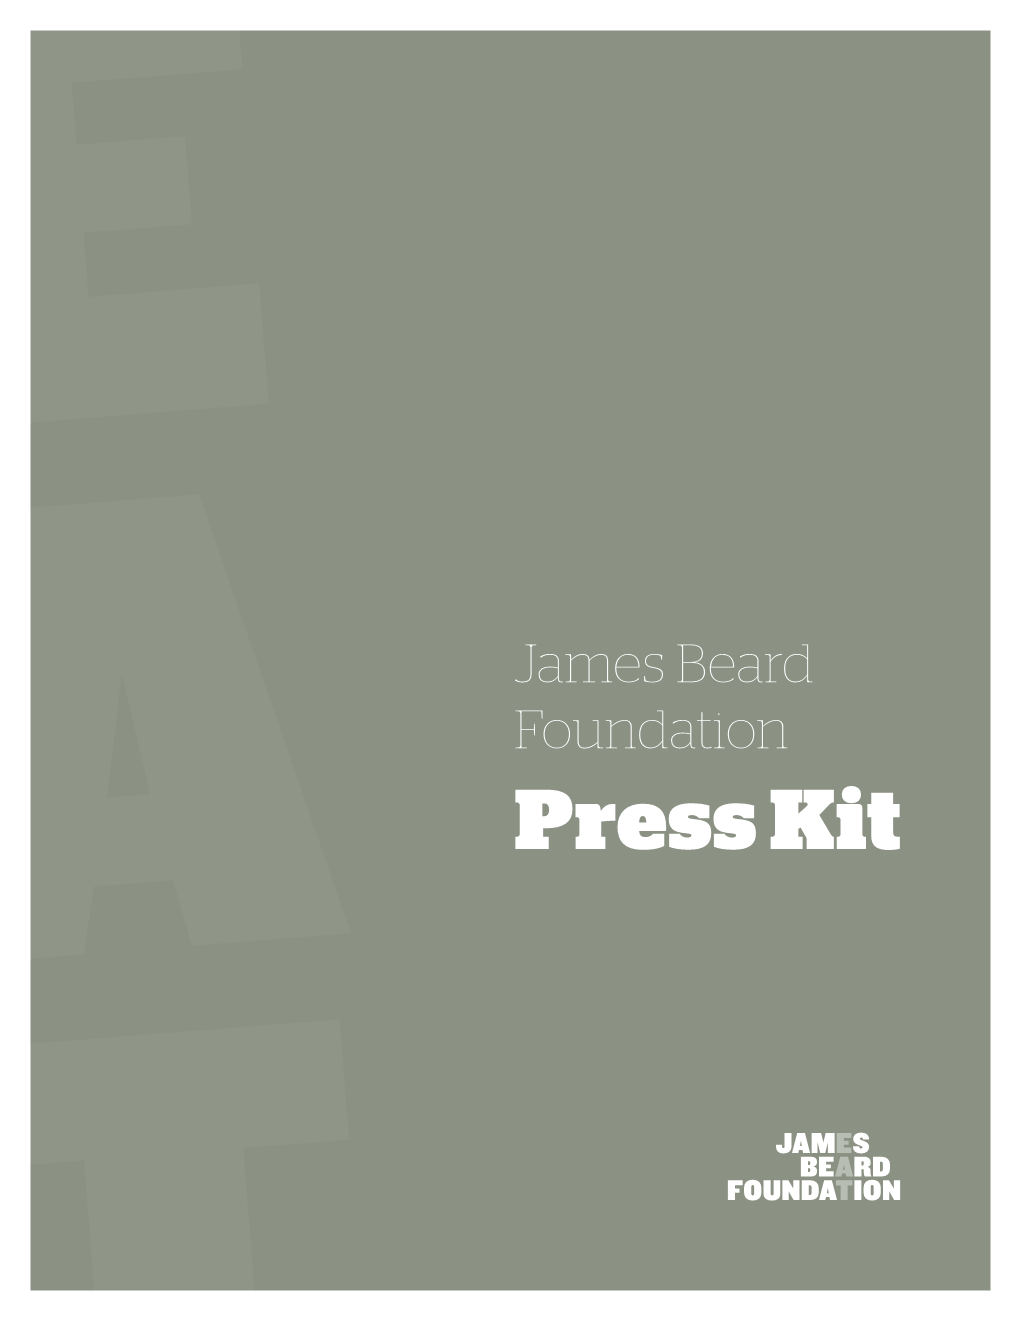 Press Kit About JBF